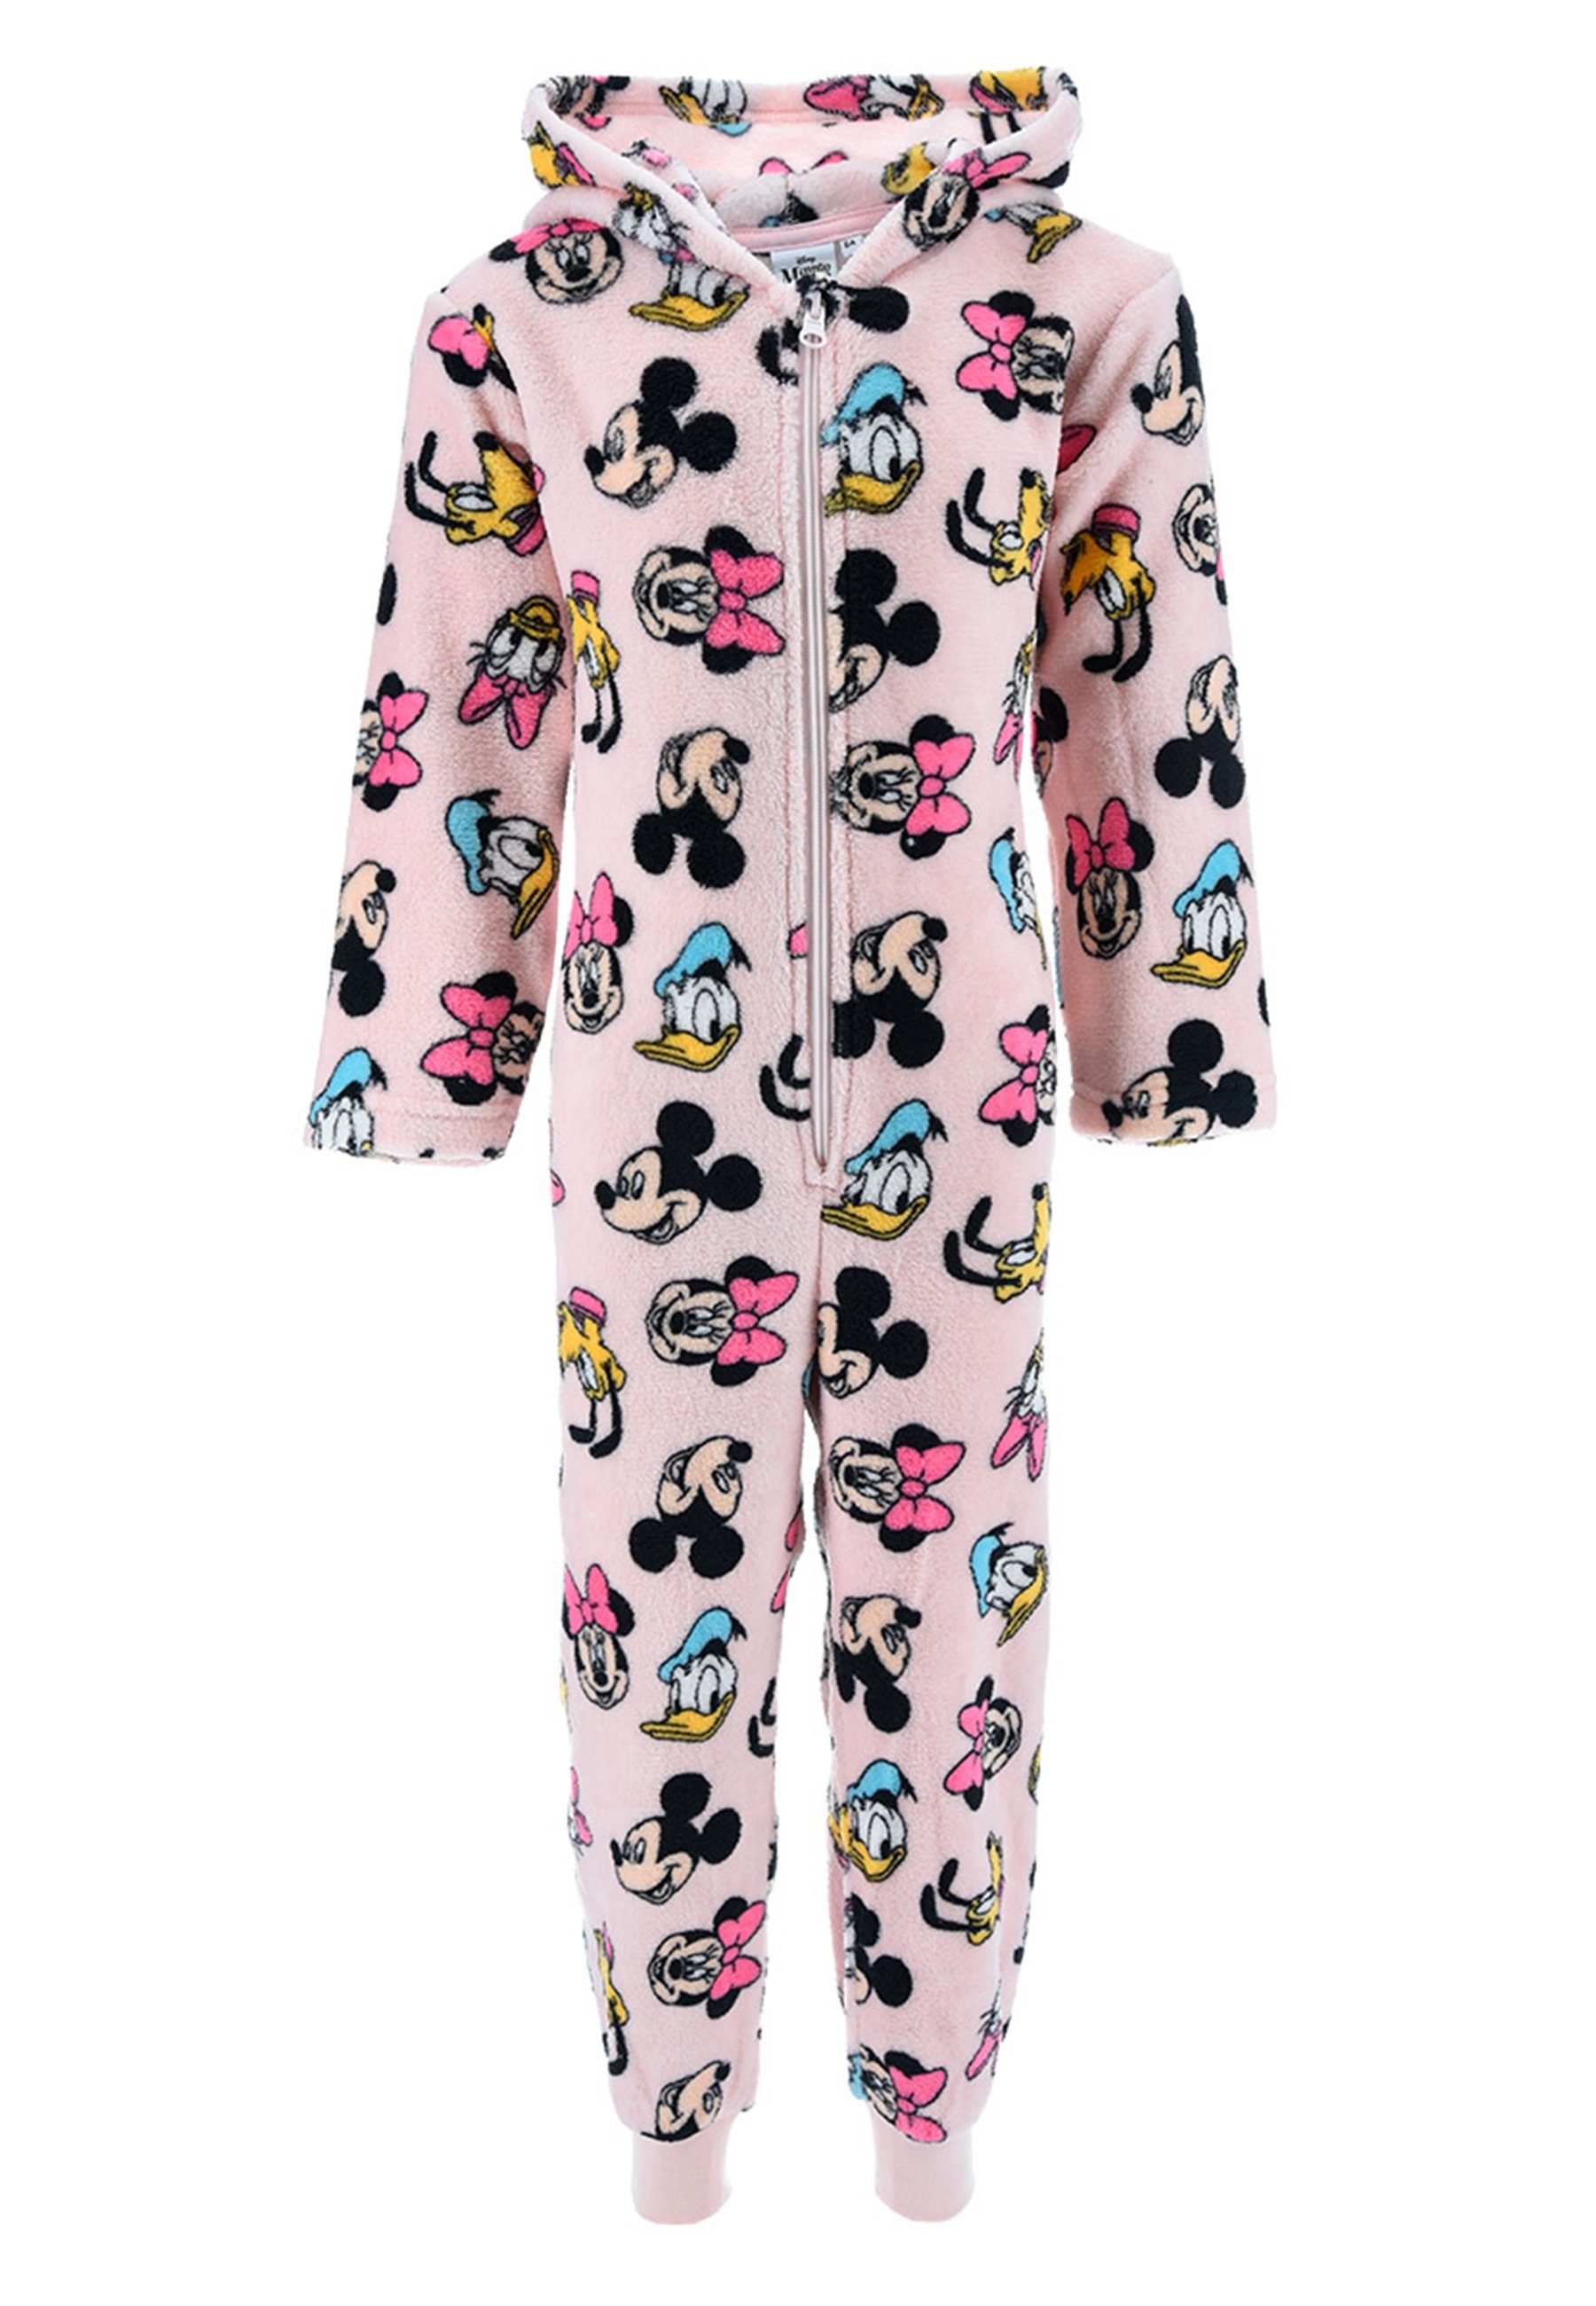 Schlafanzug Mouse Minnie Nachtwäsche Disney Rosa Schlaf langarm Pyjama Overall Mädchen